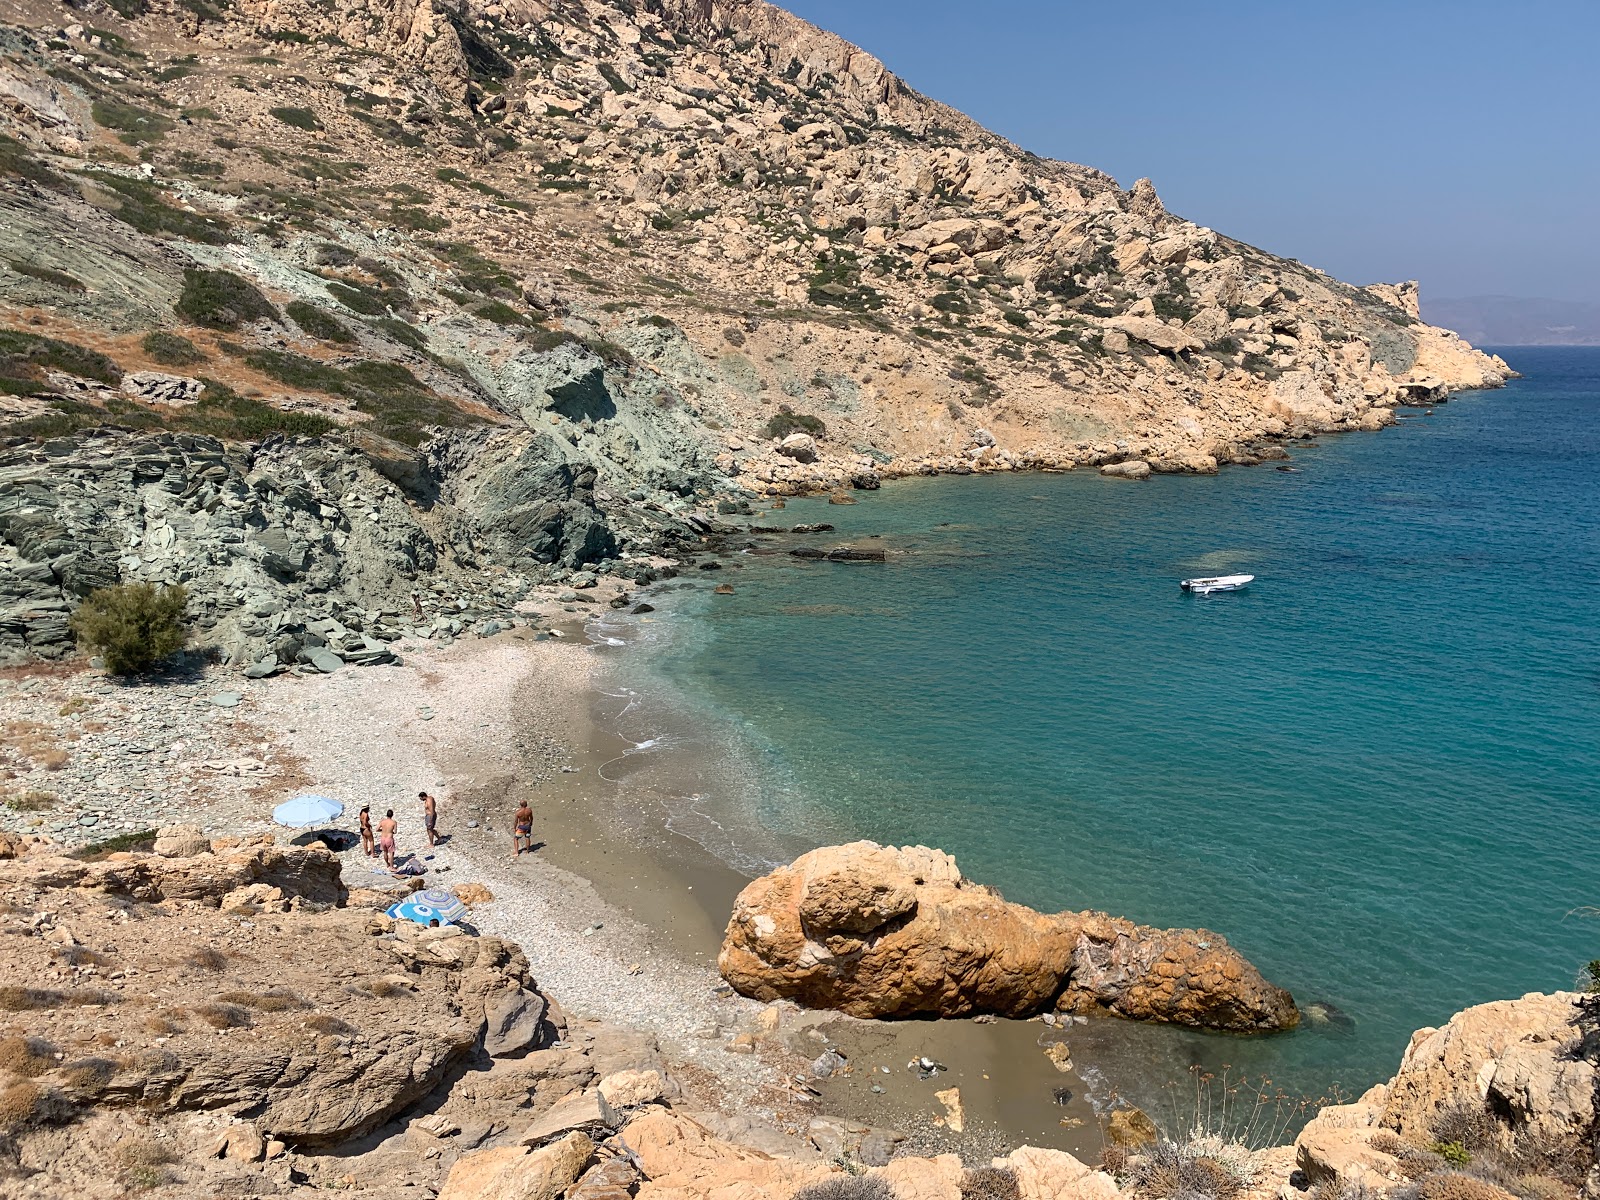 Maltas beach'in fotoğrafı gri kum ve çakıl yüzey ile